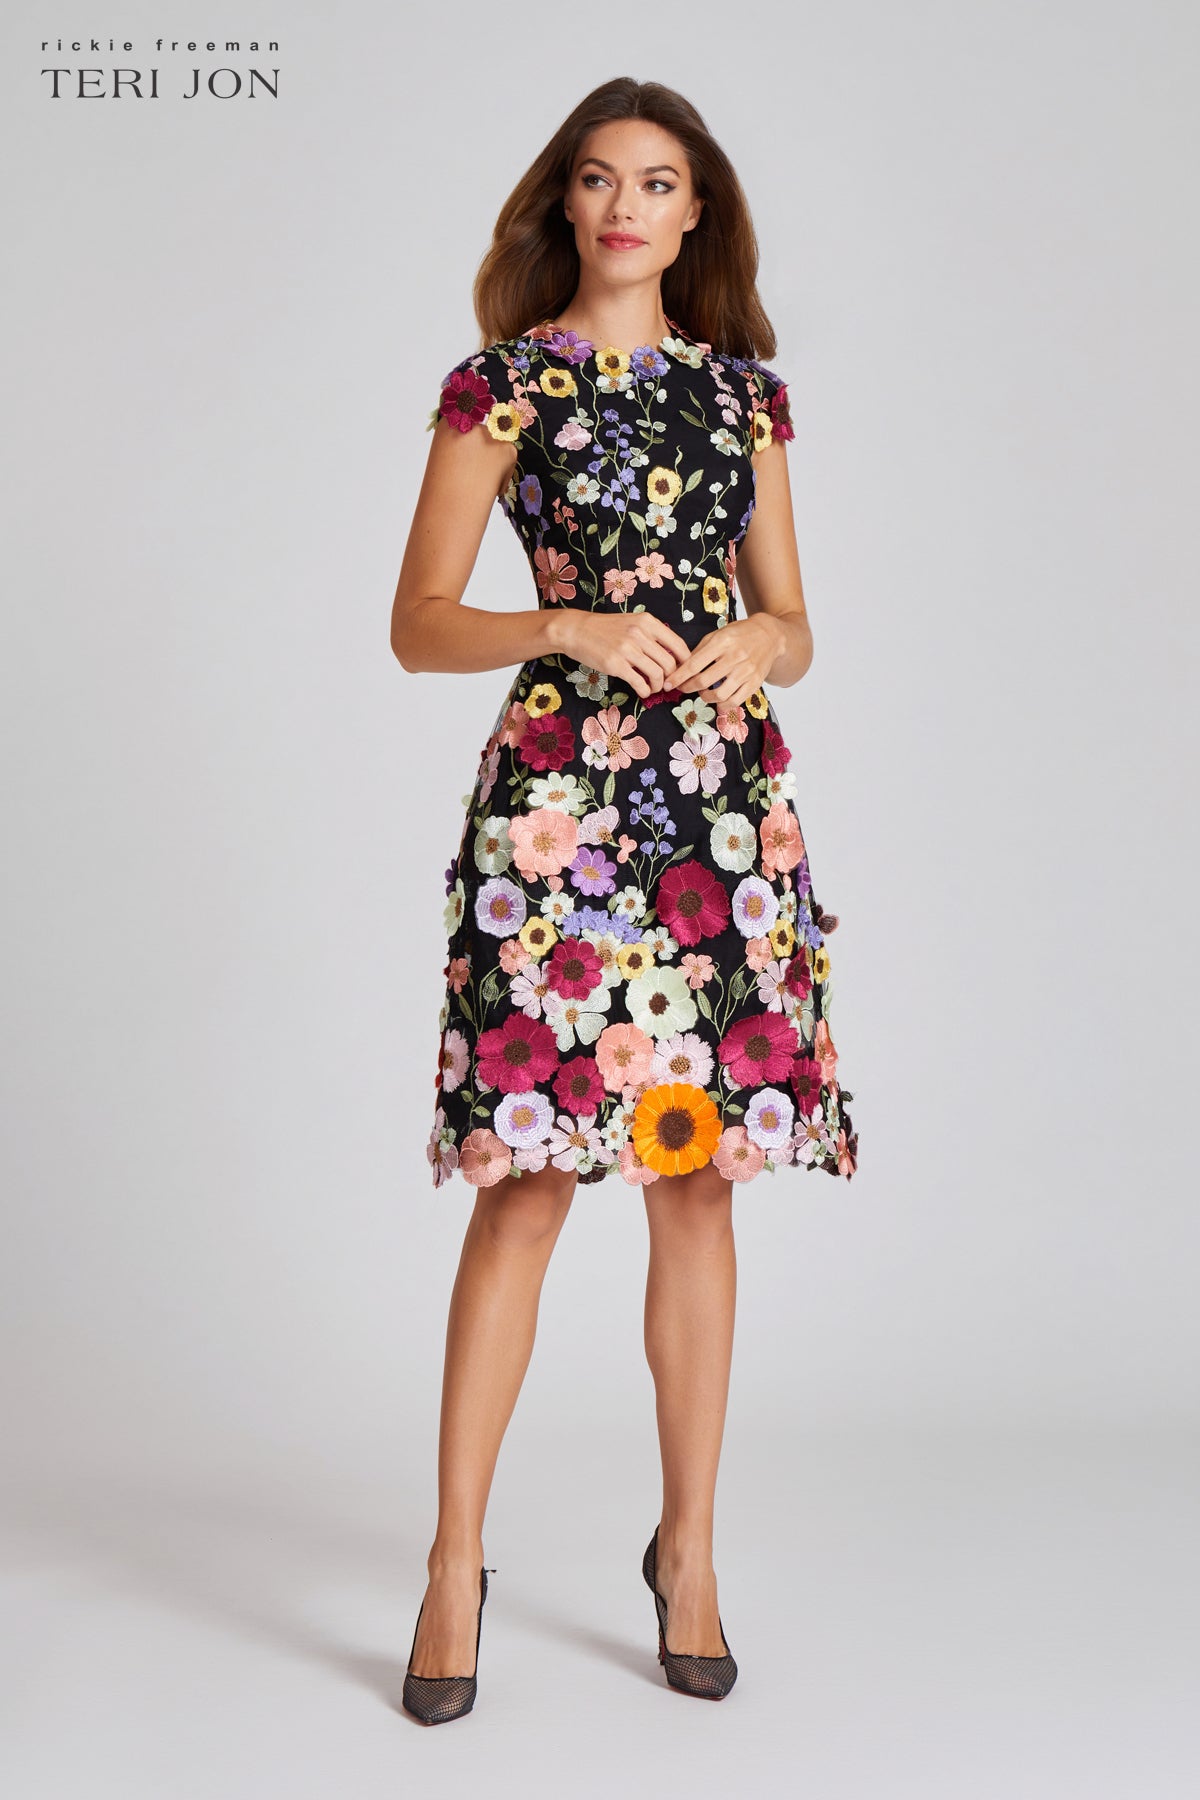 3D Appliquéd Floral Lace Fit-And-Flare Dress – Terijon.com